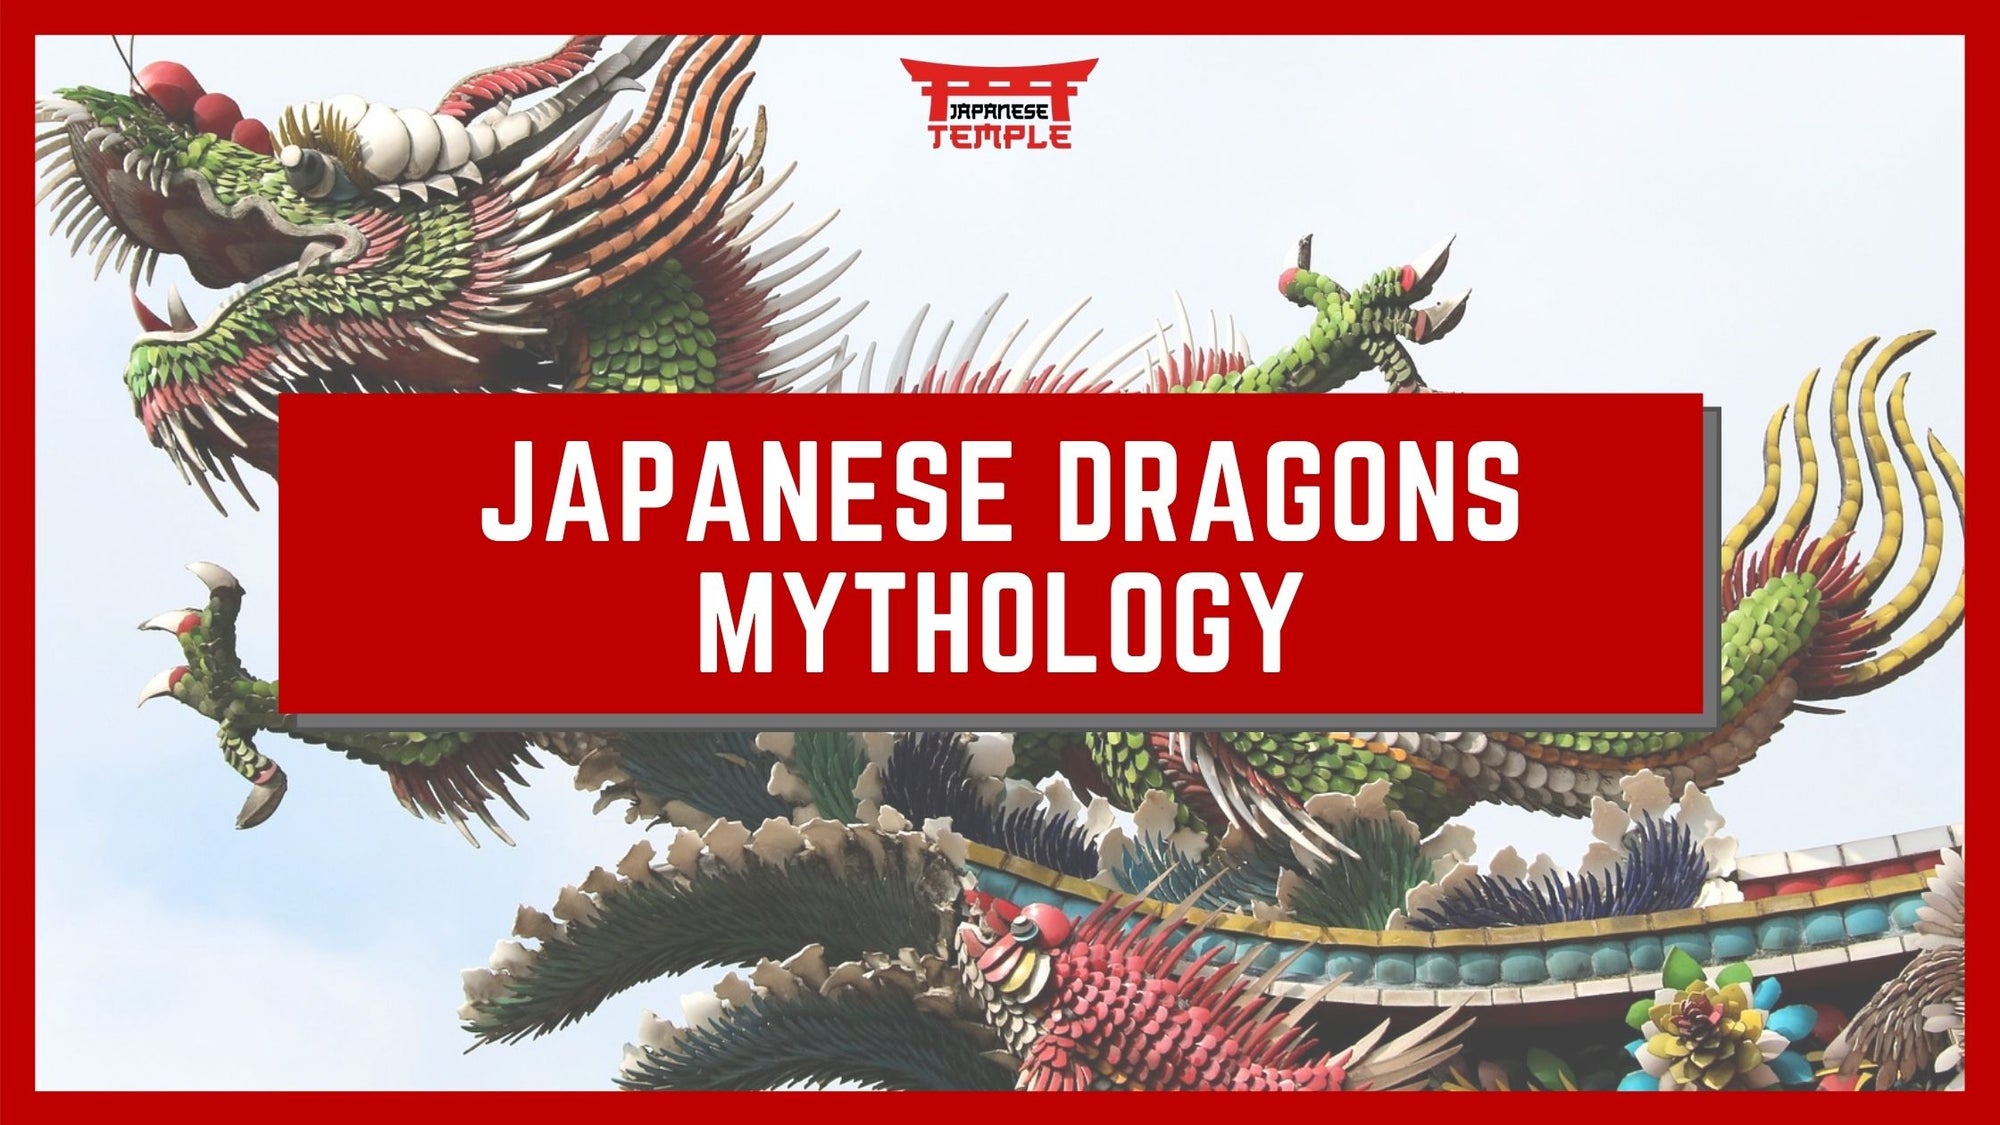 Japanese dragon mythology